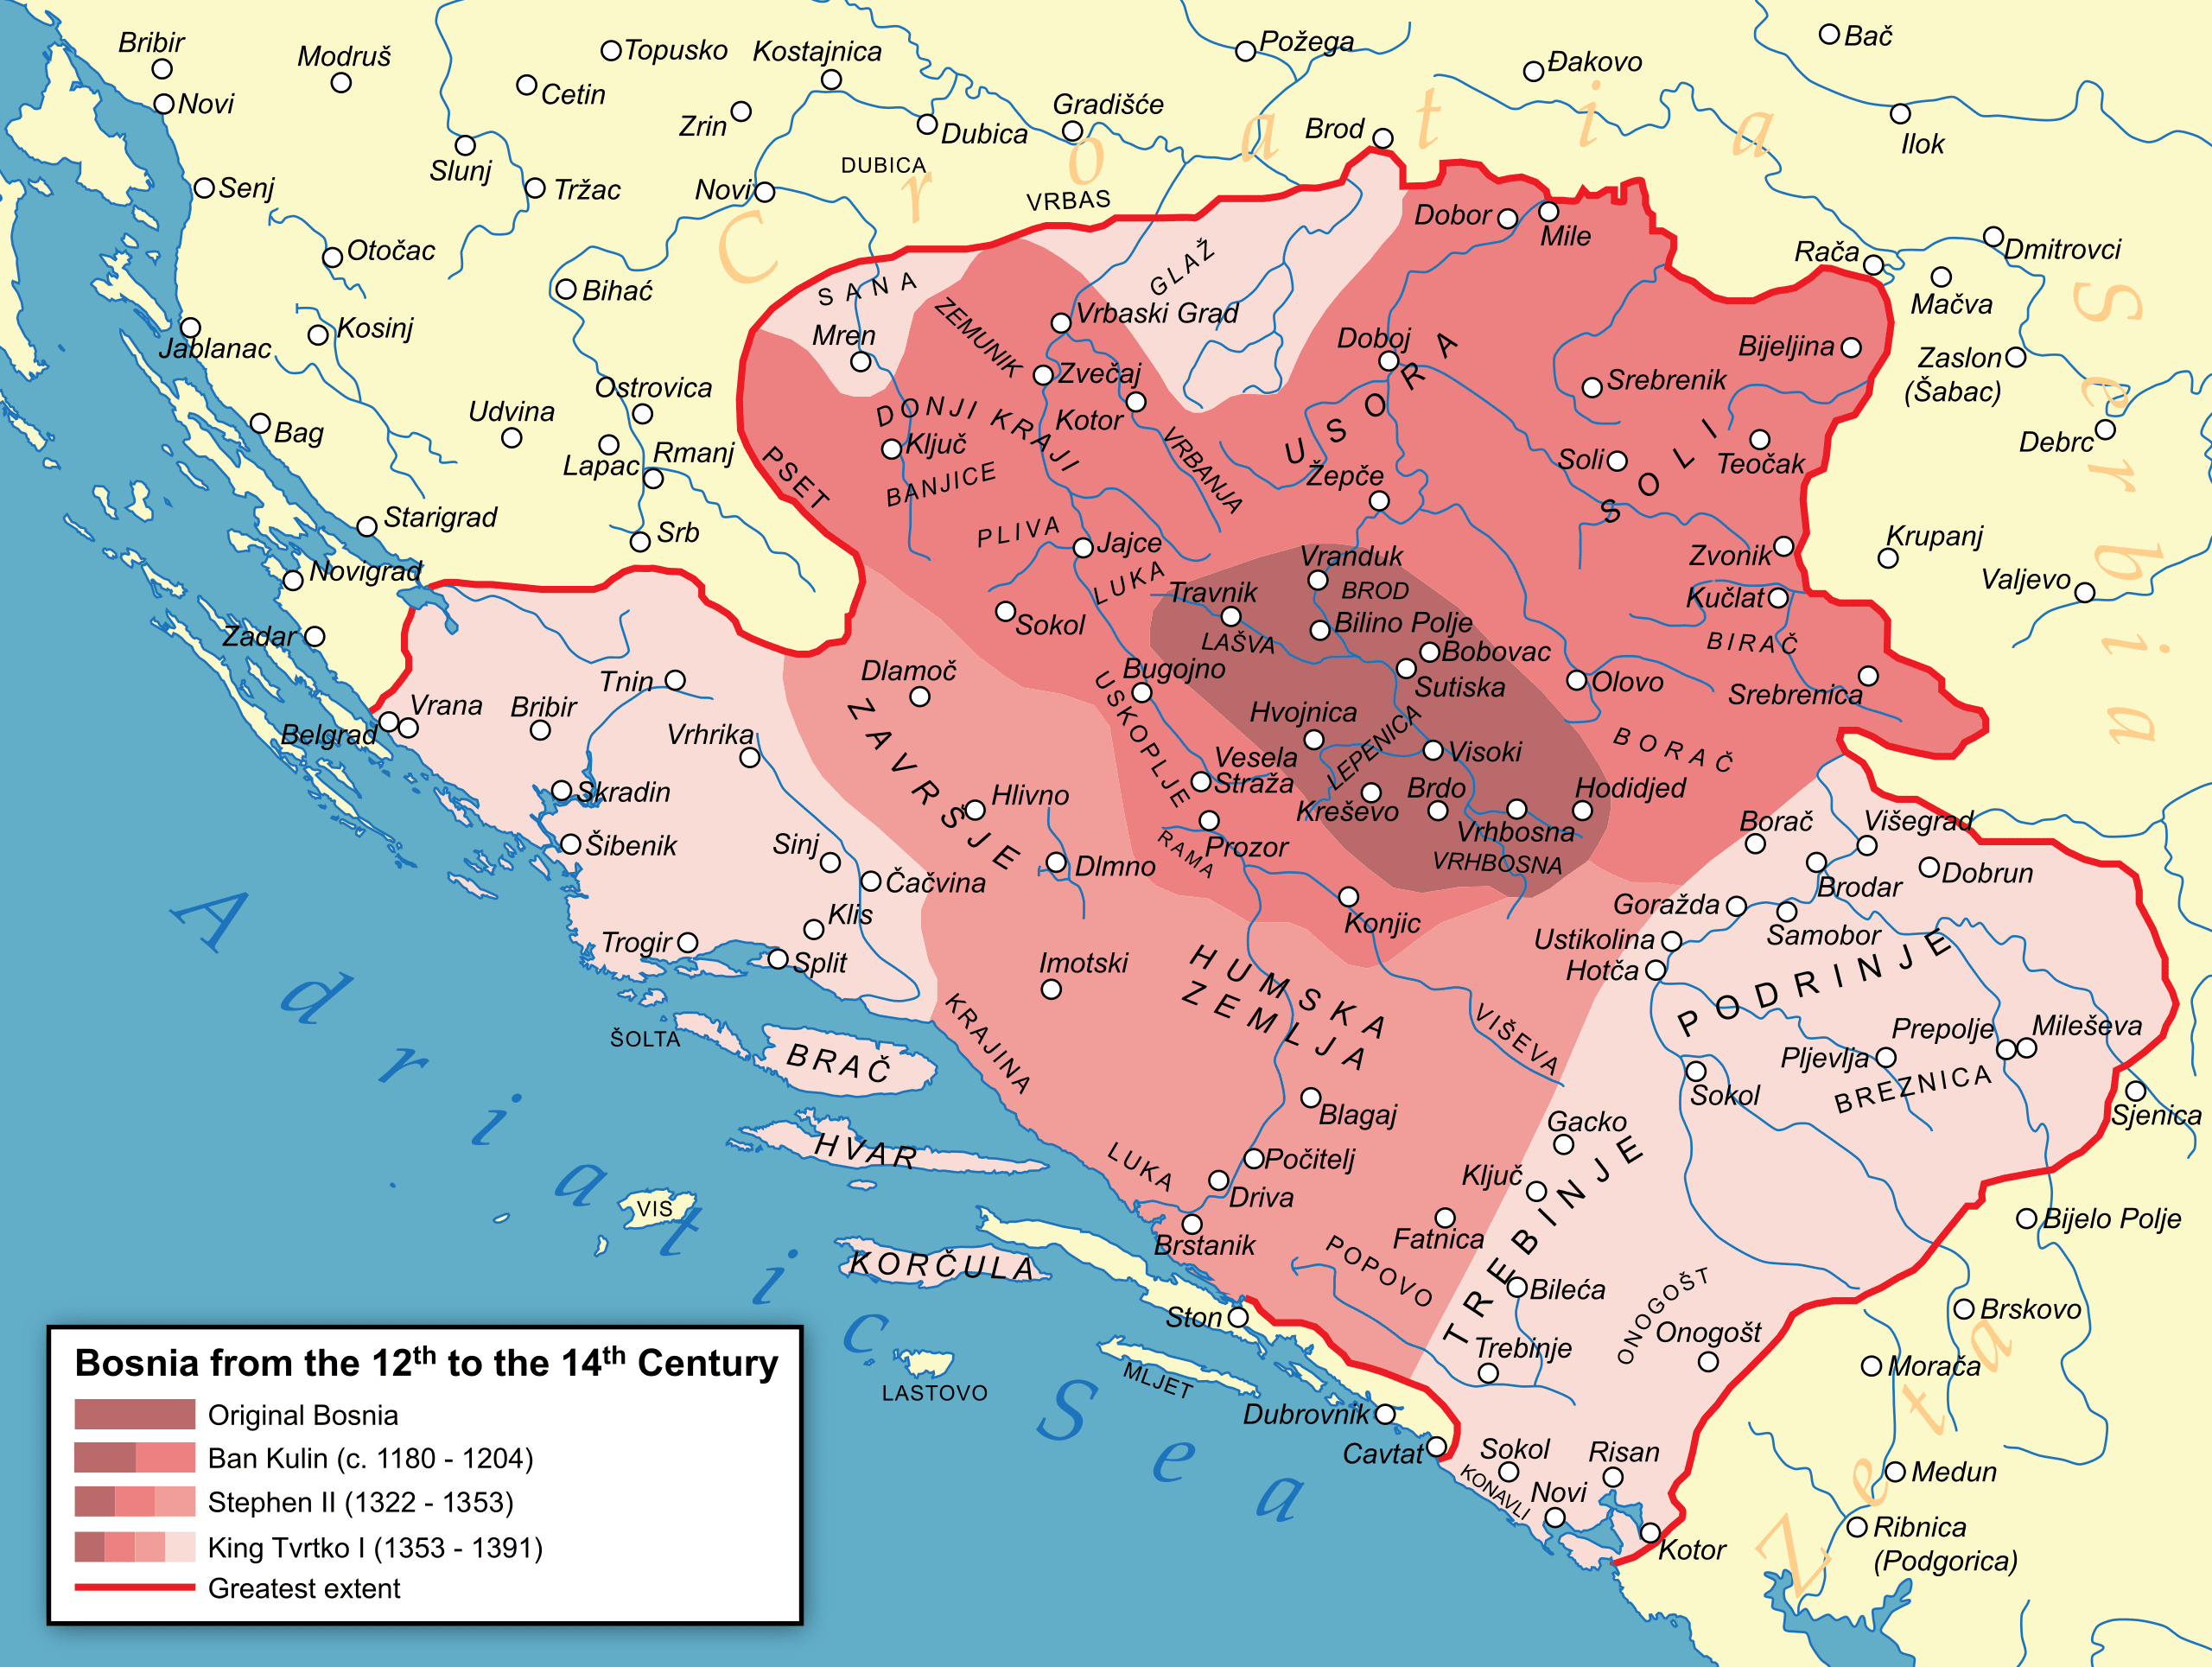 Ausdehnung des Königreichs Bosnien vom 12.-14. Jahrhundert, mit Hum - "Humska zemlja" - mittig und dem angrenzenden Fürstentum Zeta rechts unten